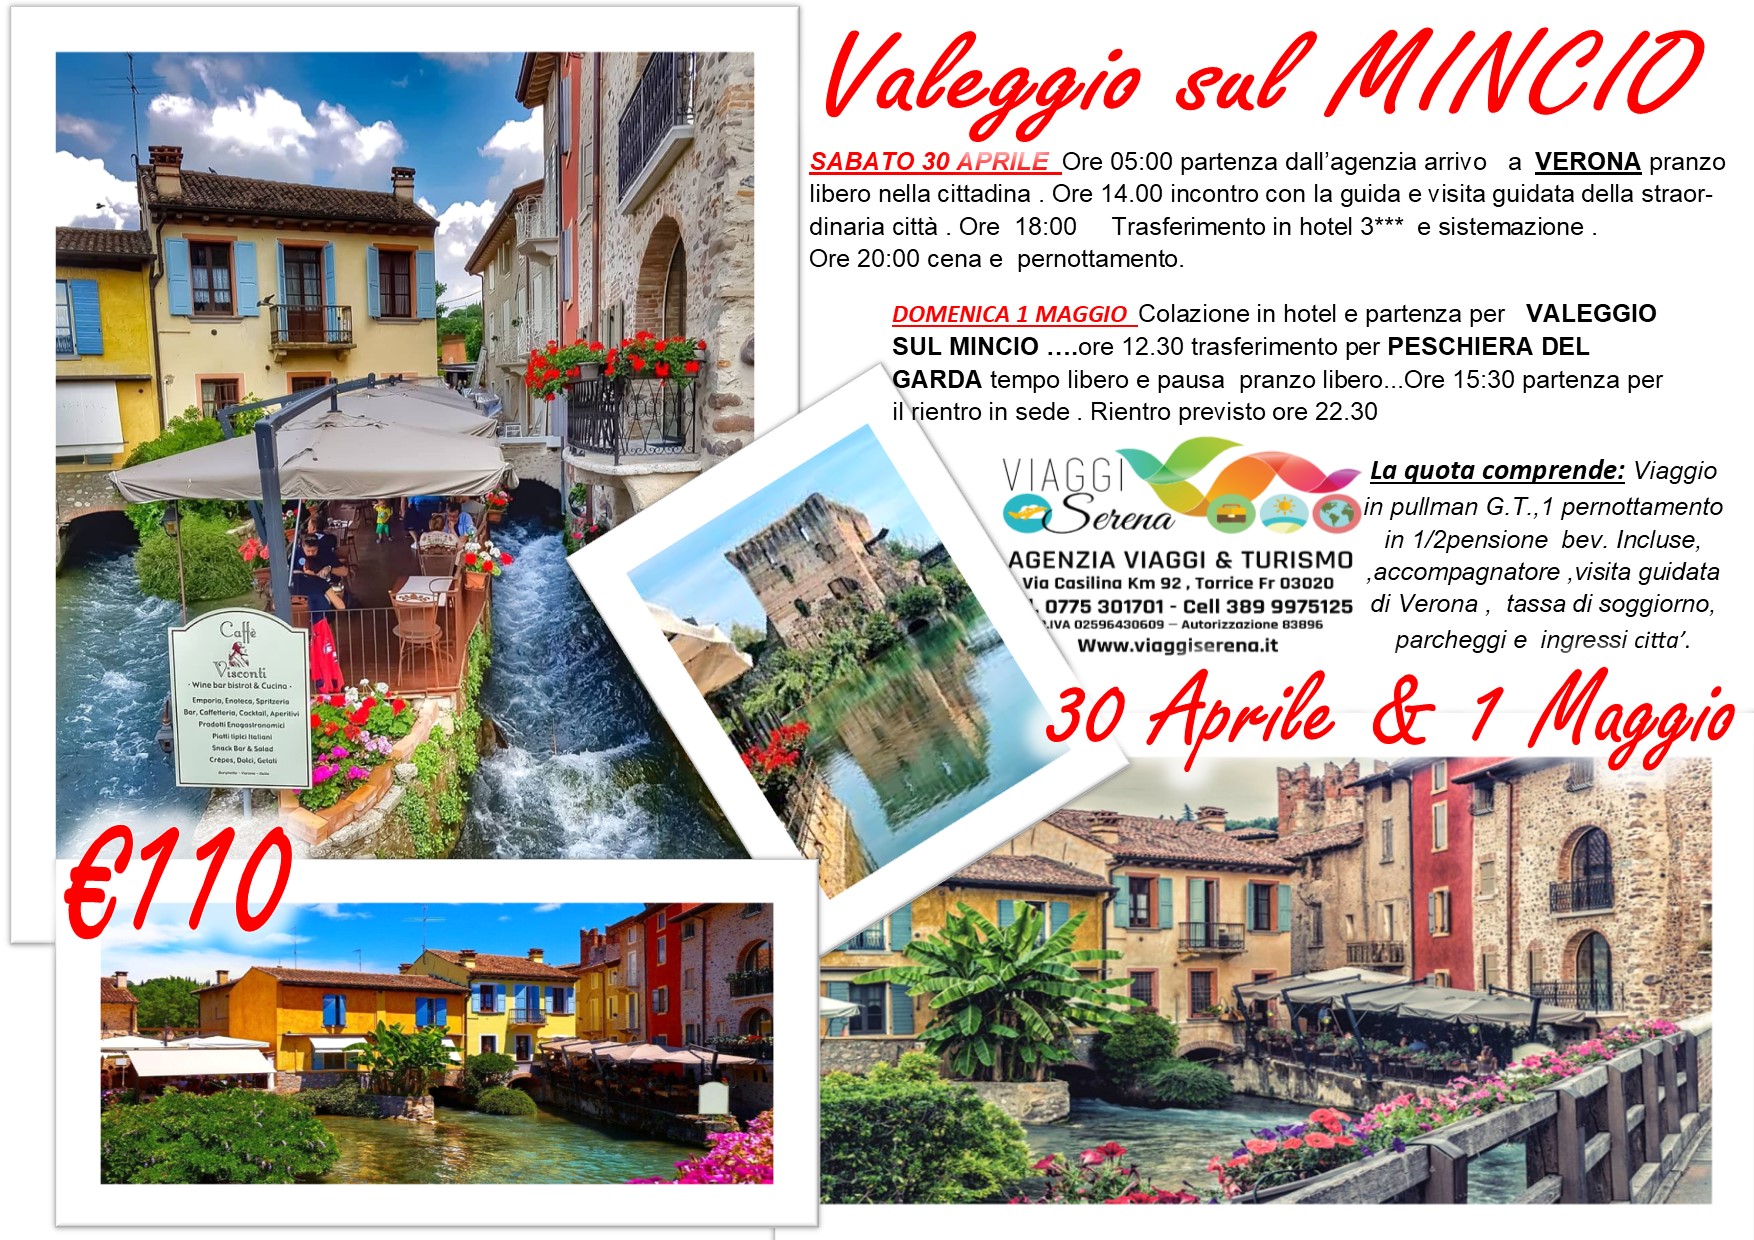 Viaggi di Gruppo: Valeggio sul MINCIO, Verona e Peschiera sul Garda 30 Aprile 1 Maggio € 110,00